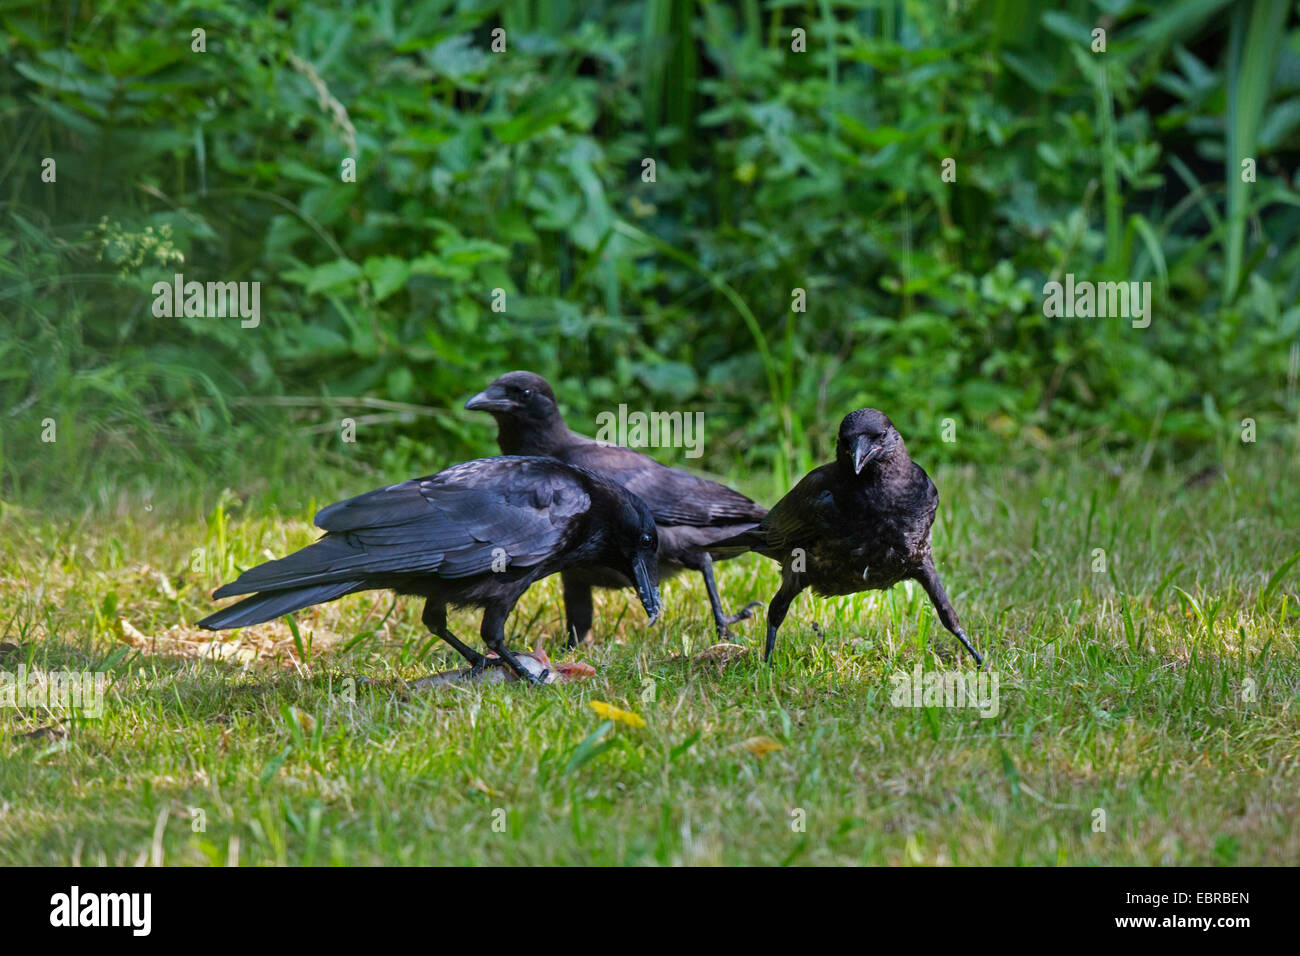 Carrion crow (Corvus corone, Corvus corone corone), adulto crow con dos Cuervos de menores en un pez muerto, Alemania, Baviera Foto de stock